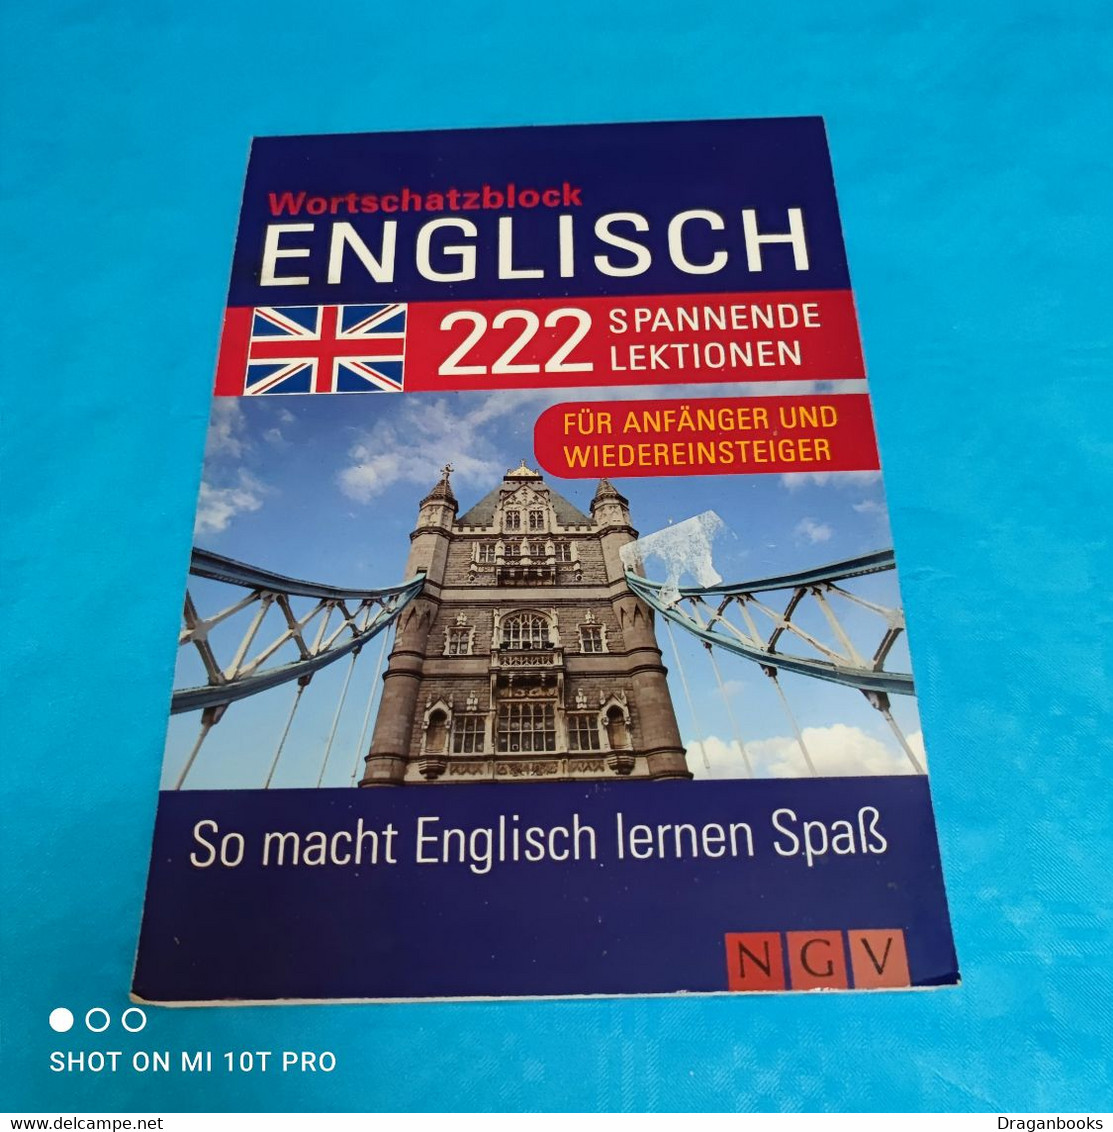 Wortschatzblock Englisch - Dictionaries